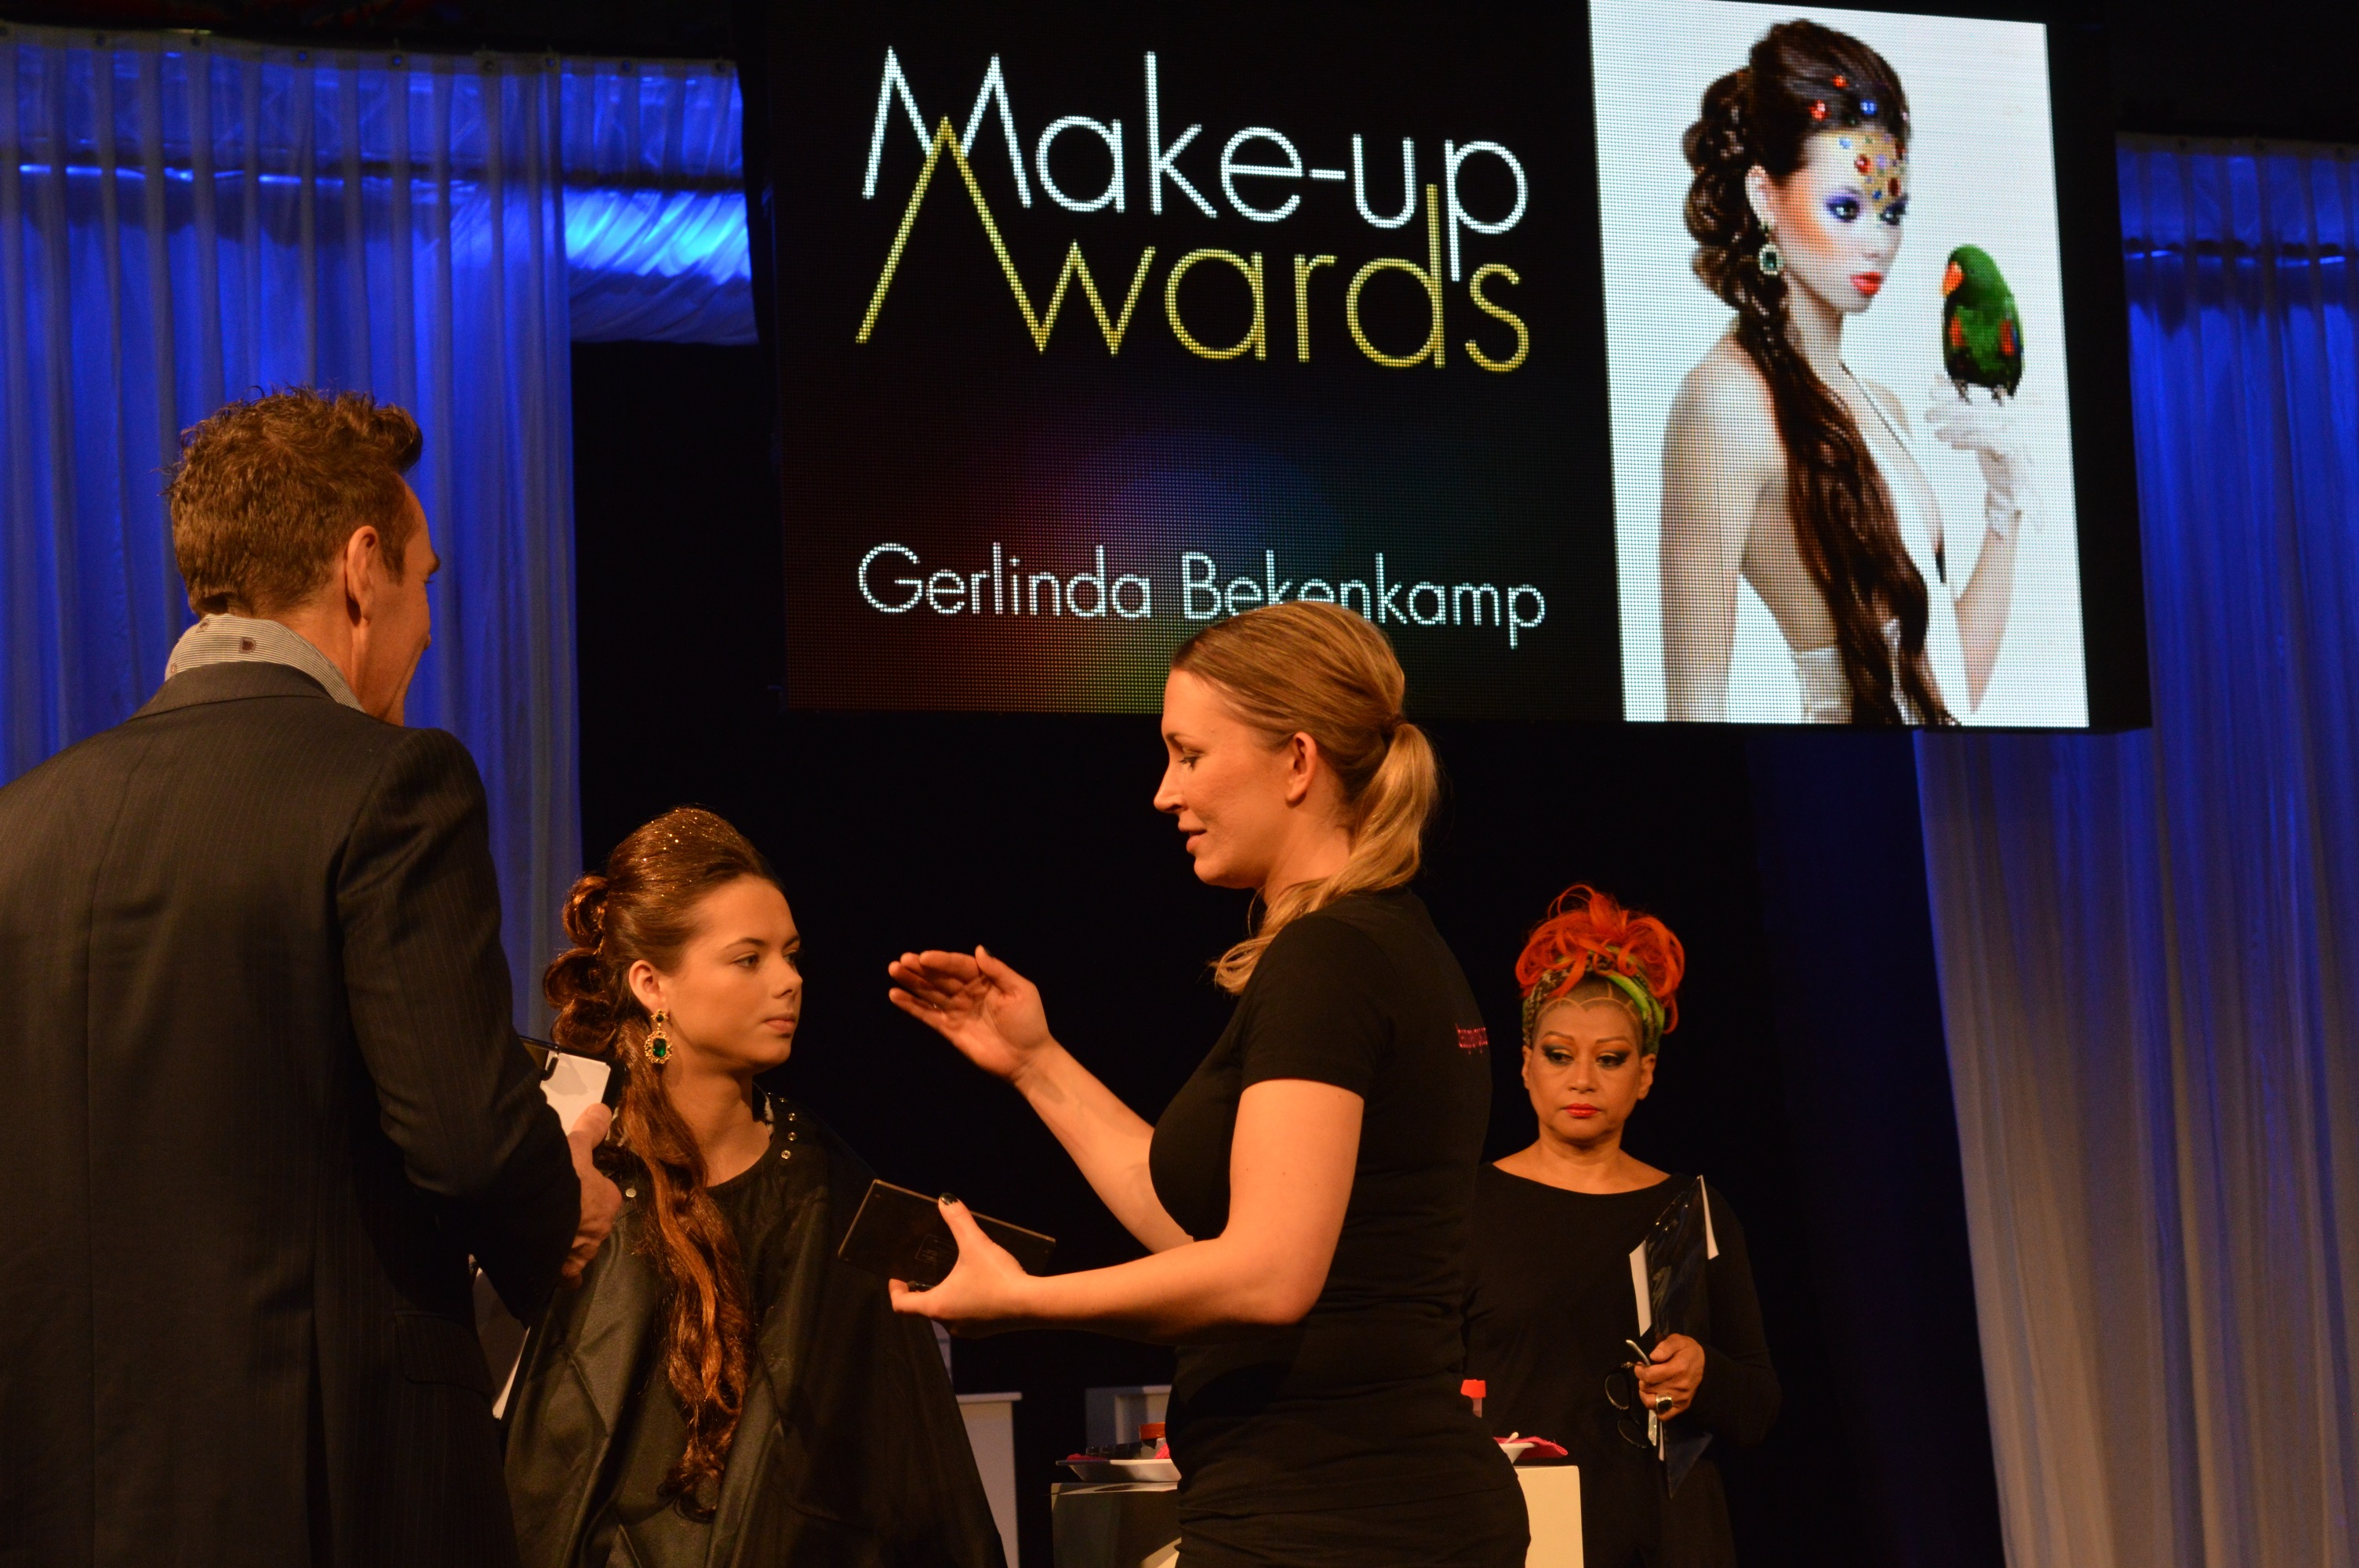 Ook nog even in beeld tijdens de make up awards - Blog Carine Belzon Fotografie